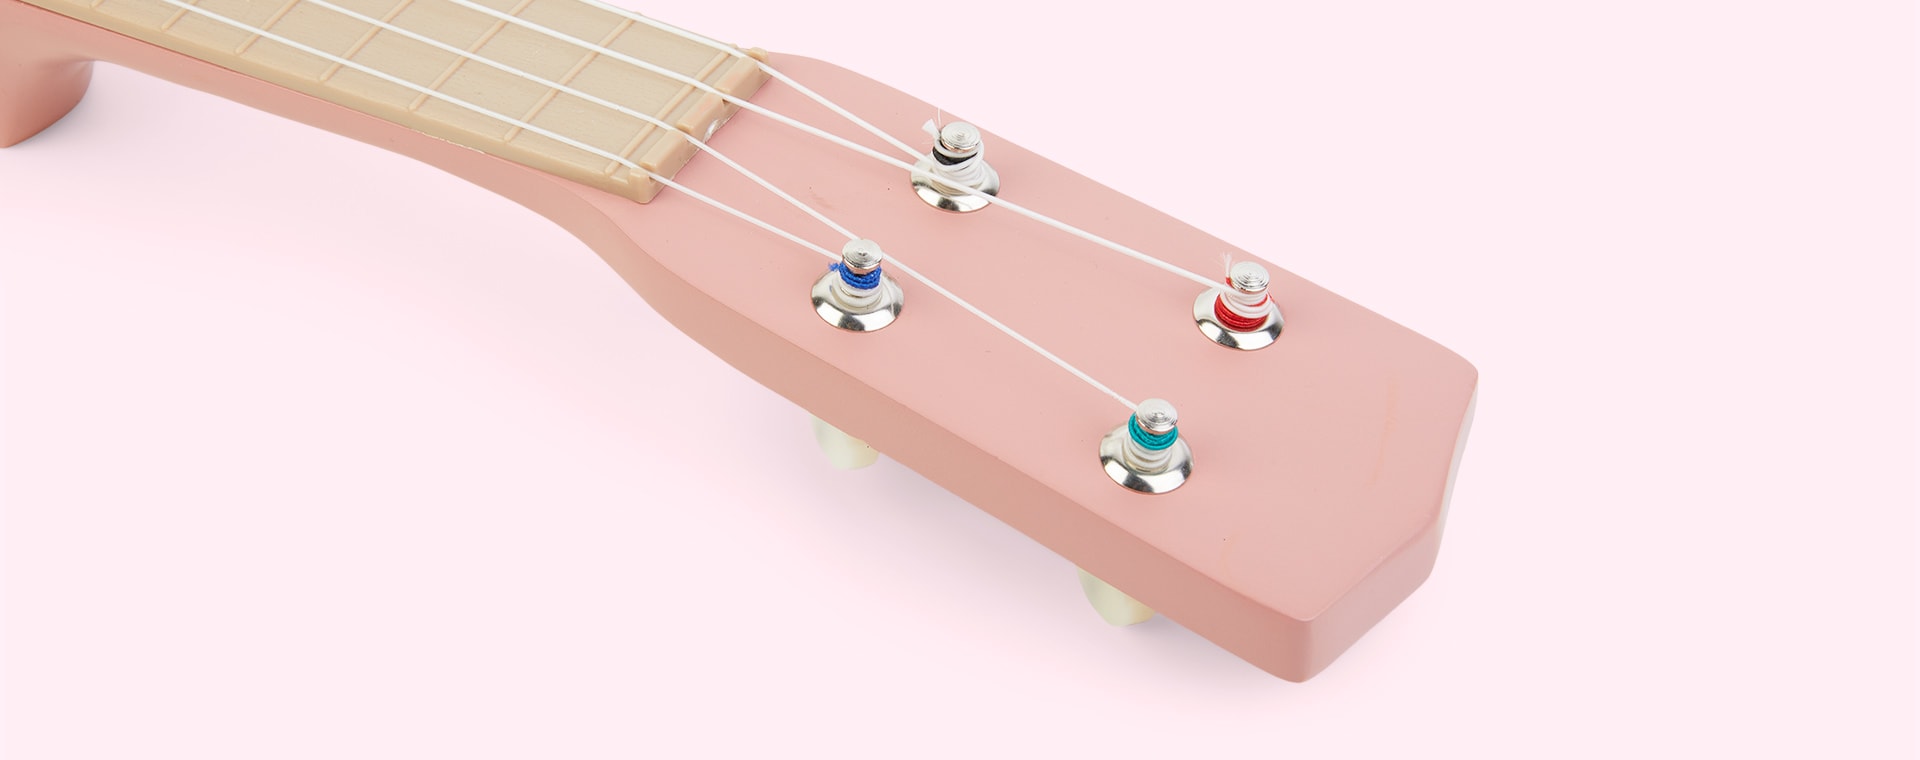 Pink Little Dutch Guitar